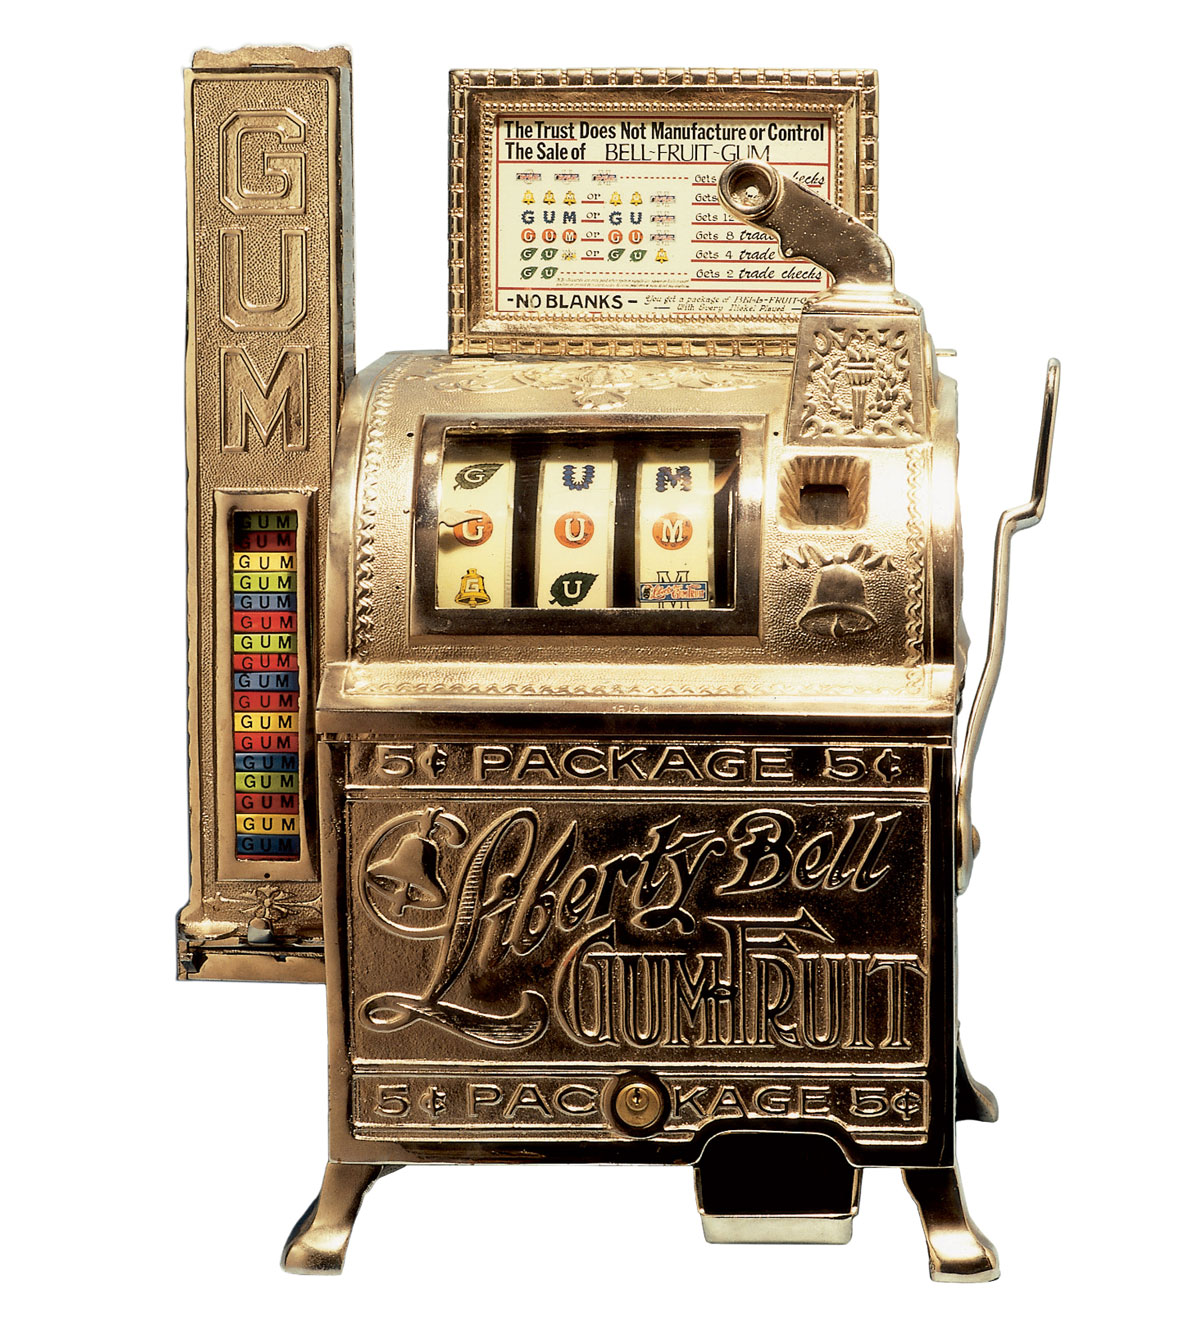 Liberty Bell Slot Machine